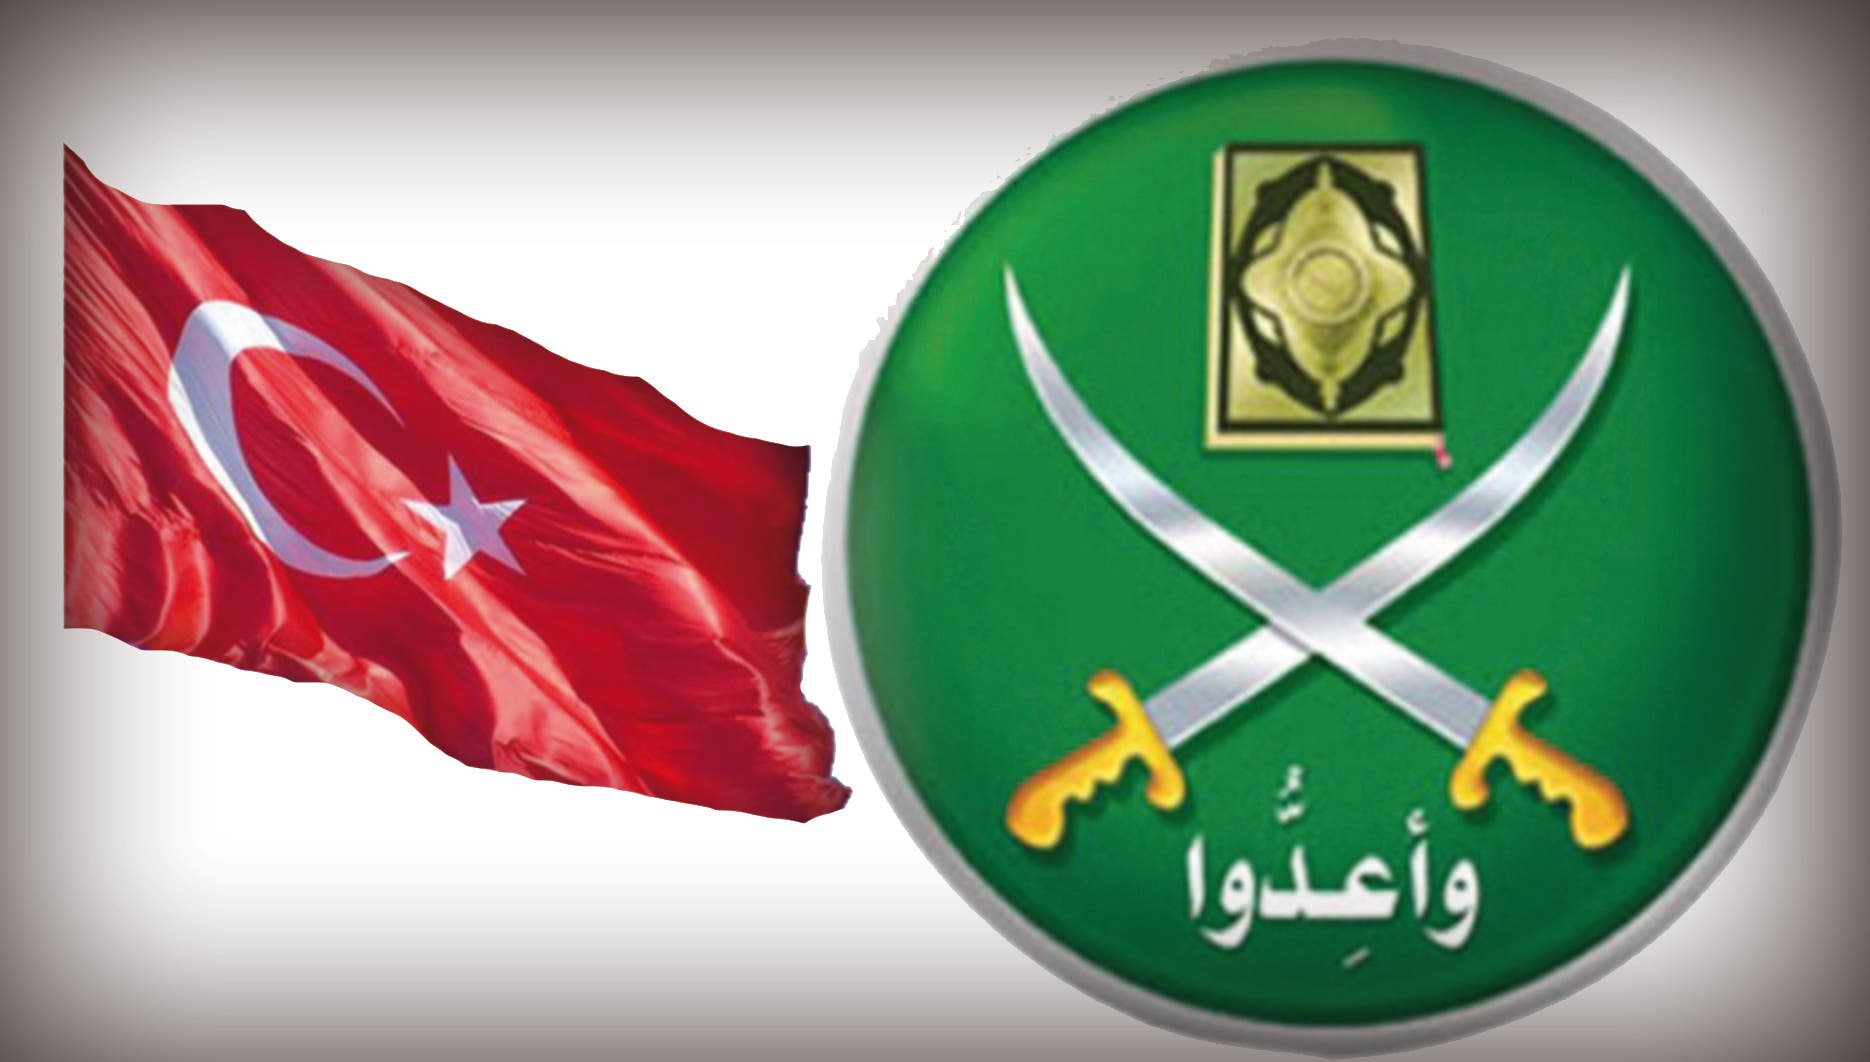 شعار الإخوان وعلم تركيا (تعبيرية)